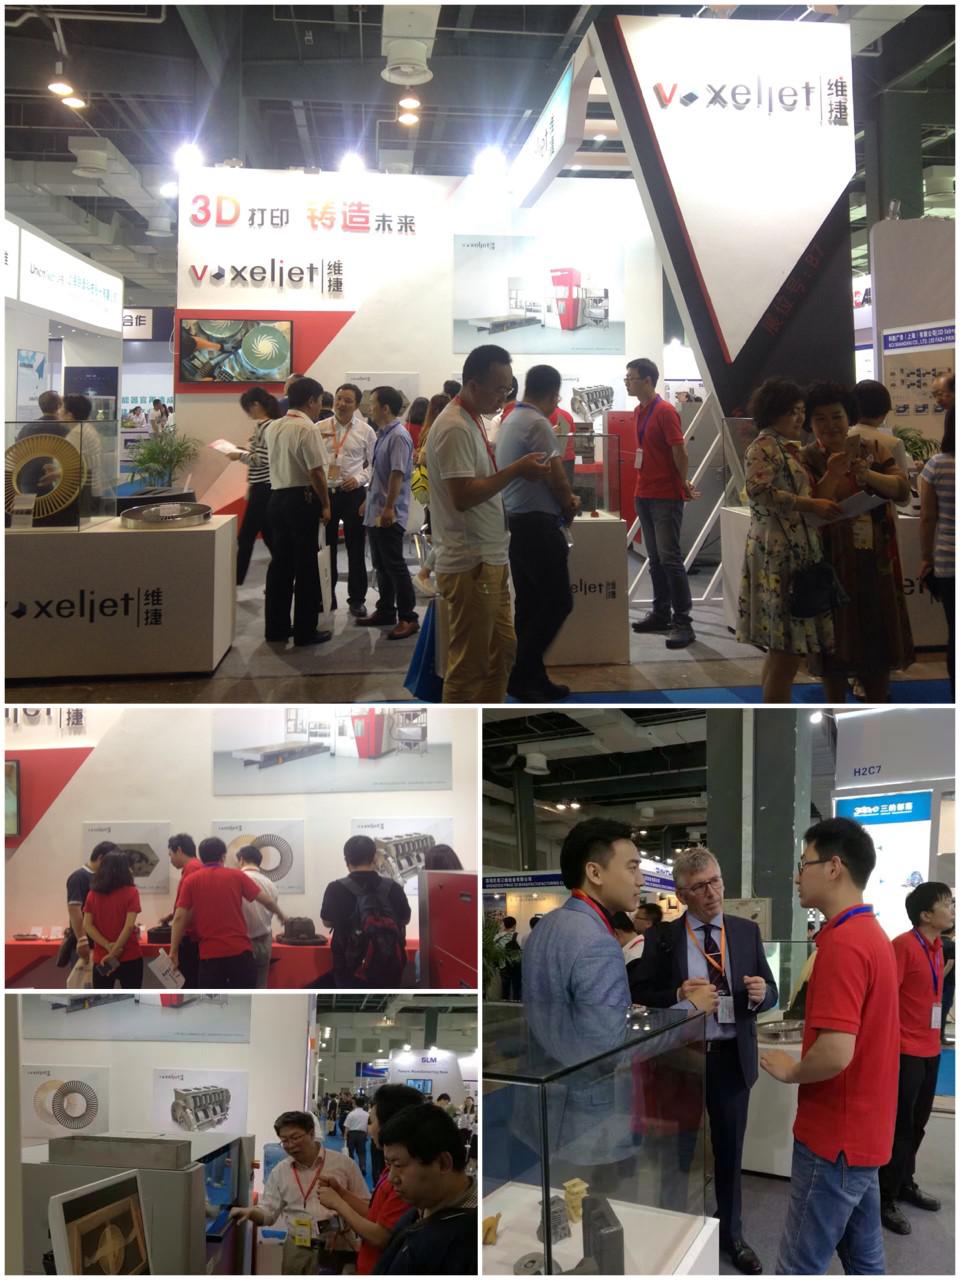 维捷中国第四届3D打印技术产业大会展后回顾—3D打印 铸造未来